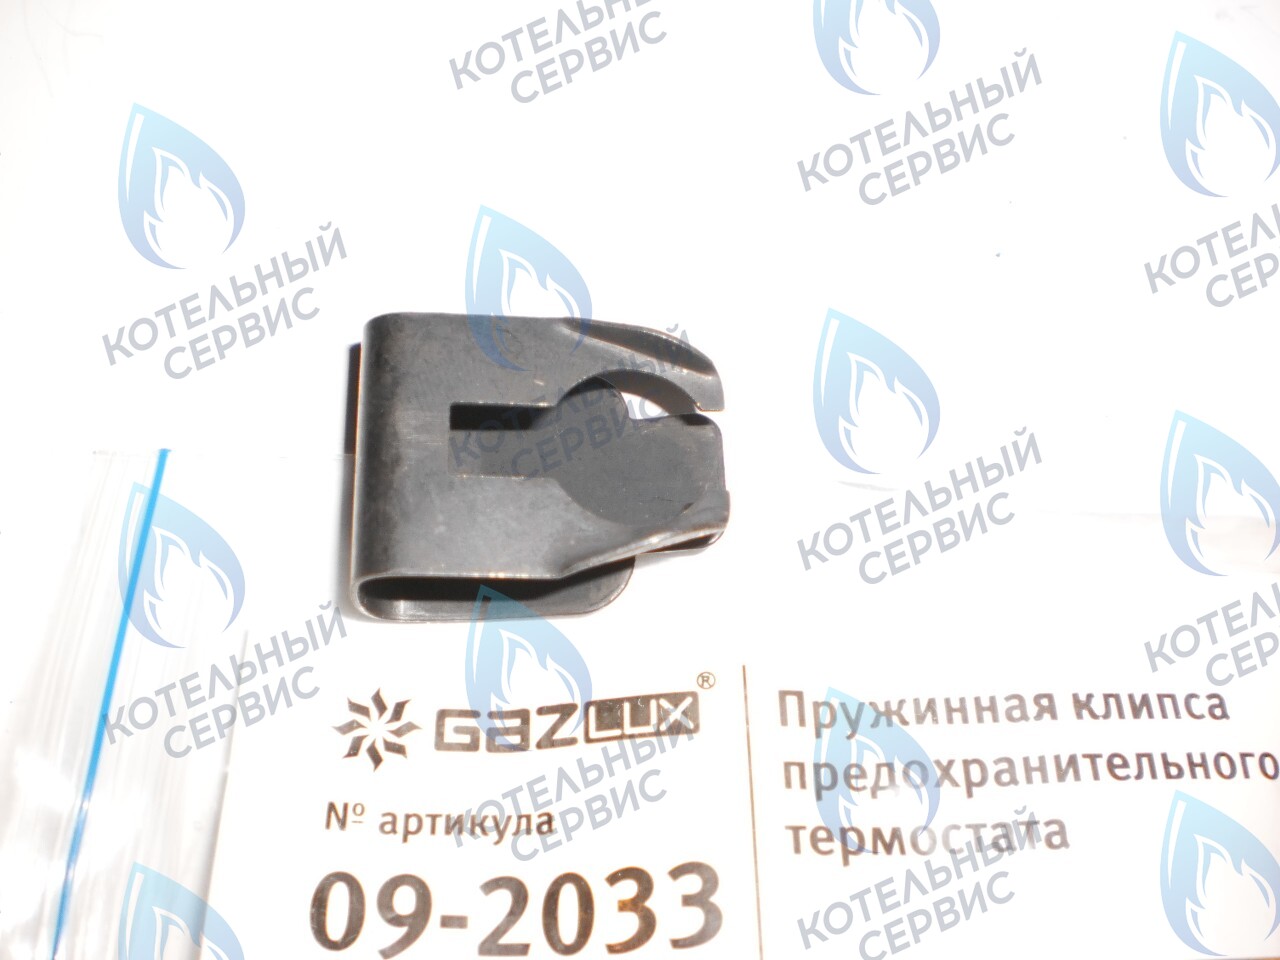 09-2033 Пружинная клипса предохранительного термостата (09-2033) GAZLUX в Москве